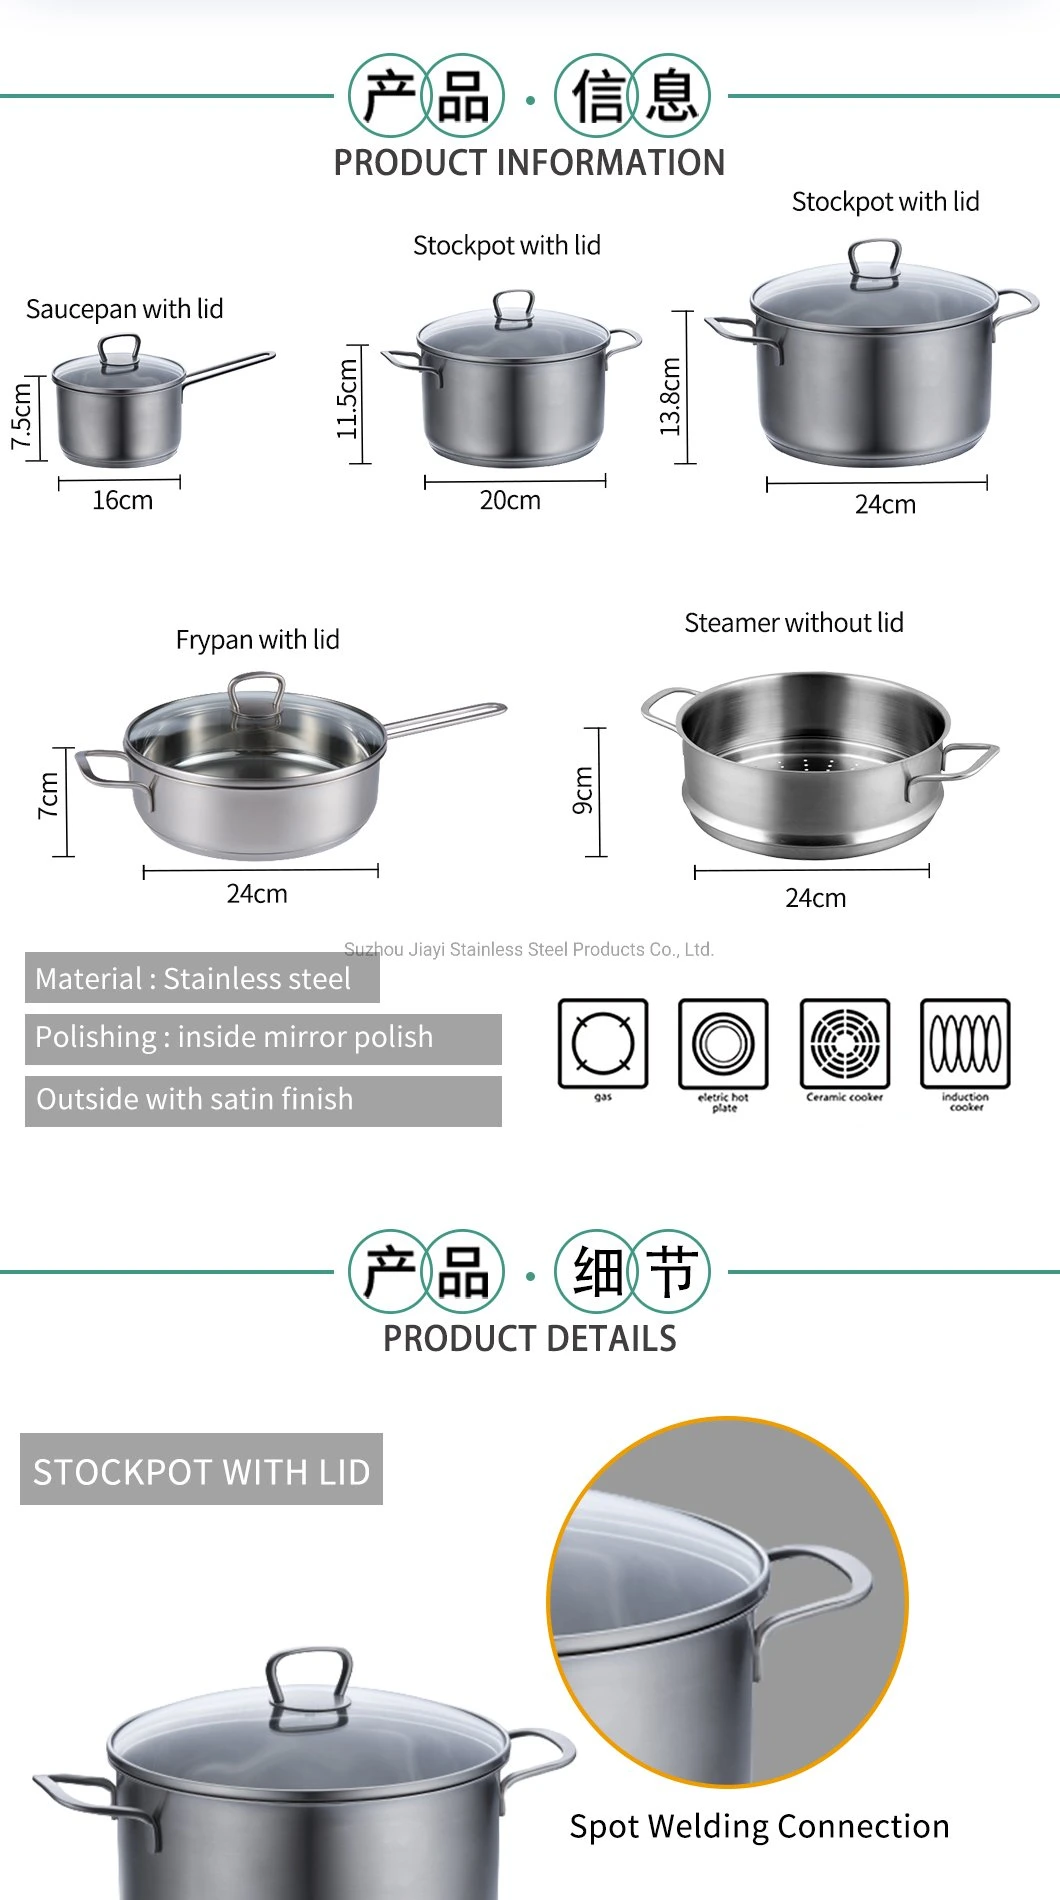 Hot Sale Stainless Steel Non Stick Pans Deep Milk Pot Stockpot Saucepan Jy-1675lst